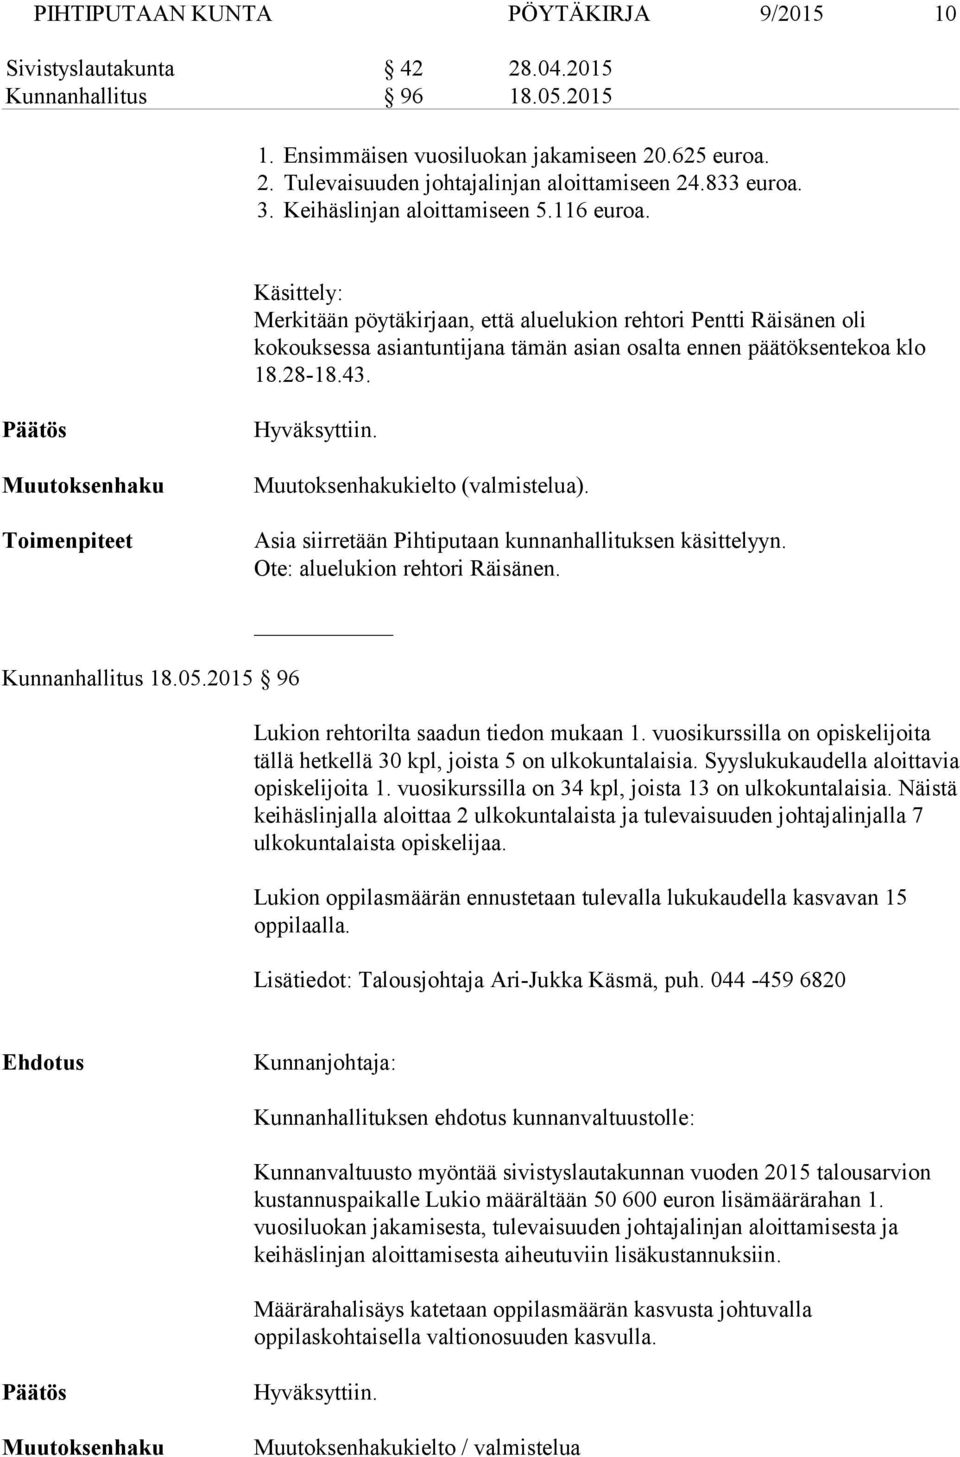 Käsittely: Merkitään pöytäkirjaan, että aluelukion rehtori Pentti Räisänen oli kokouksessa asiantuntijana tämän asian osalta ennen päätöksentekoa klo 18.28 18.43.